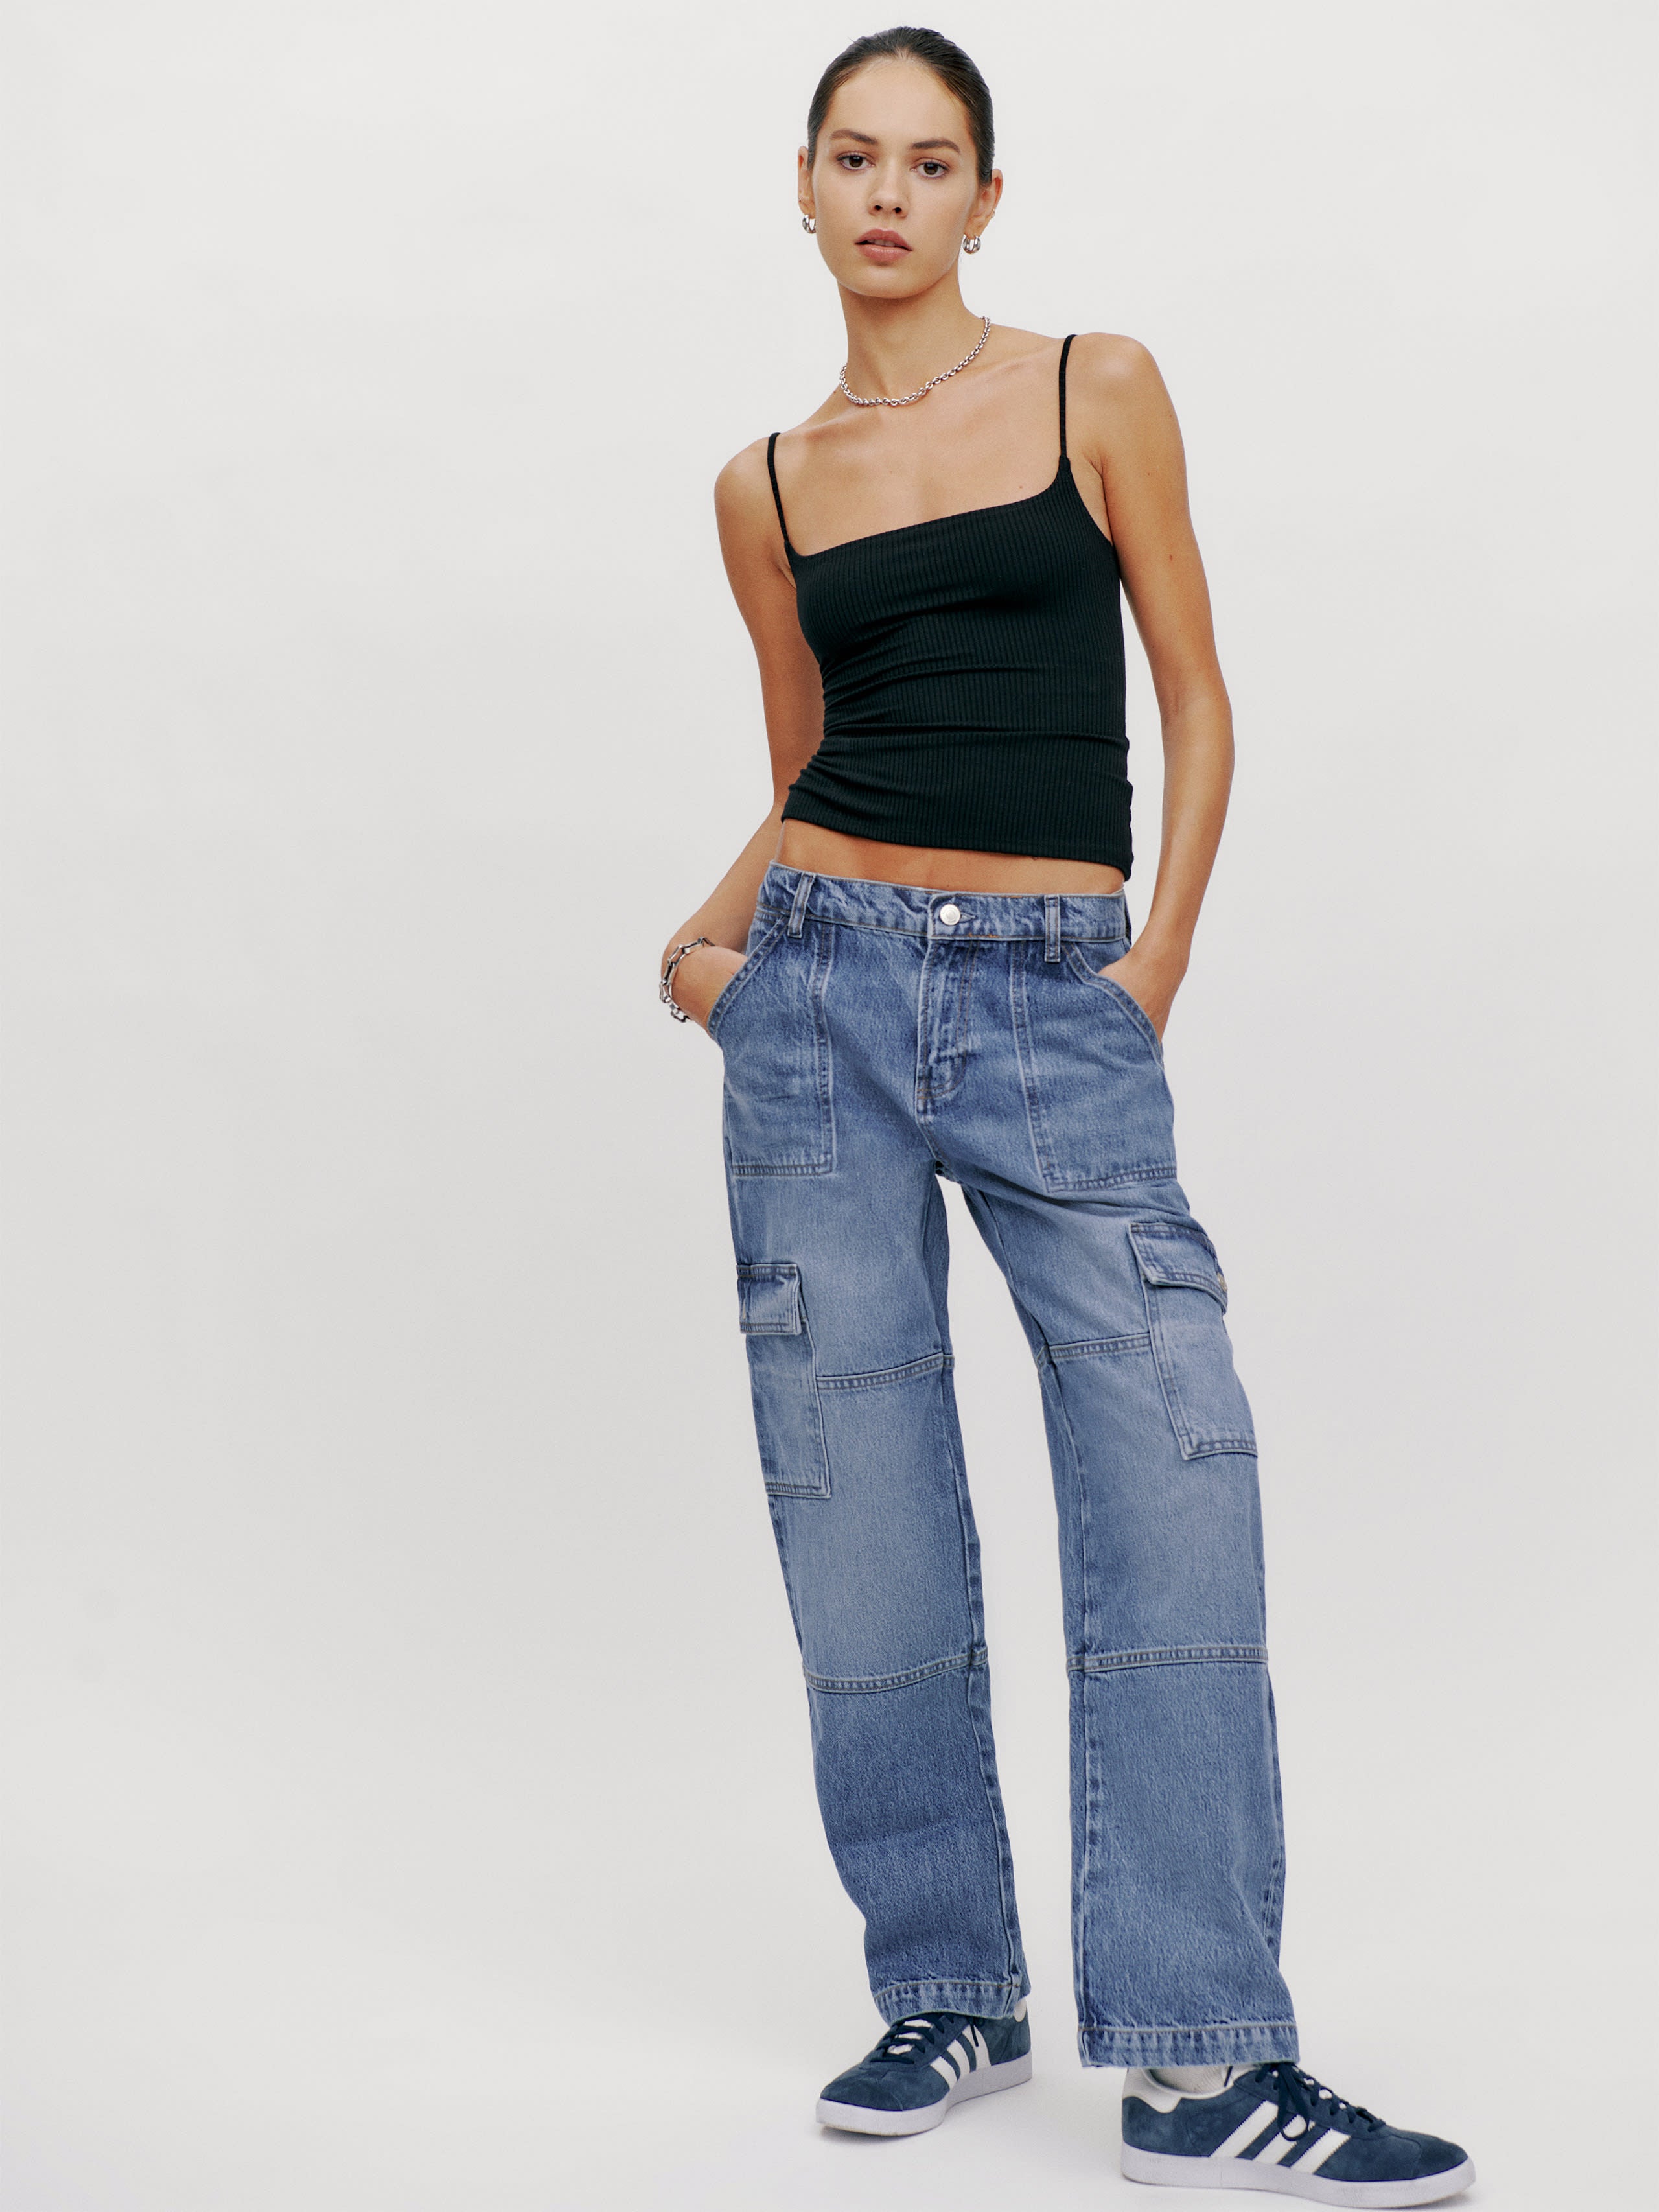 Cargo Denim Is 2023's Anti-Skinny Jeans Trend